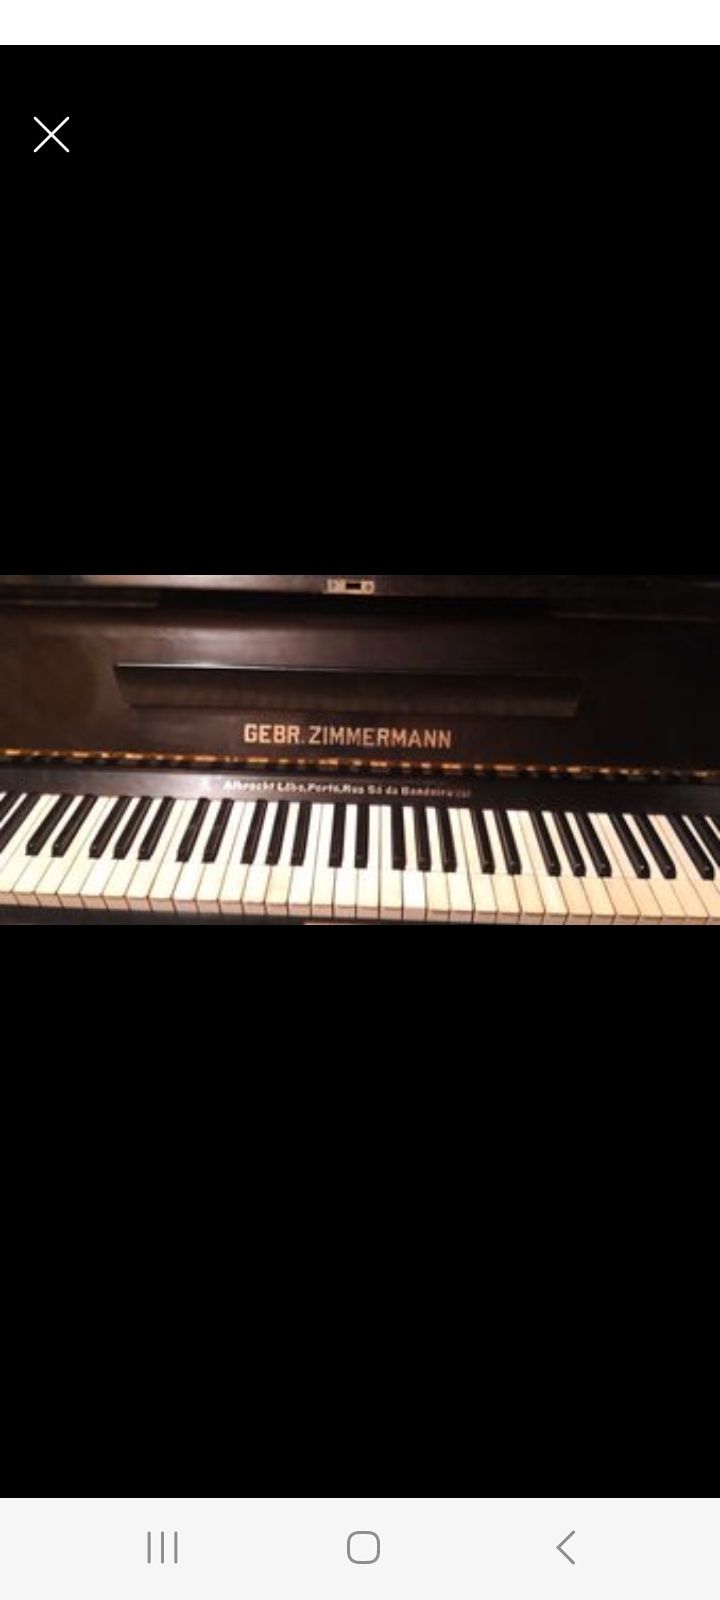 Piano Gebr. zimmermann